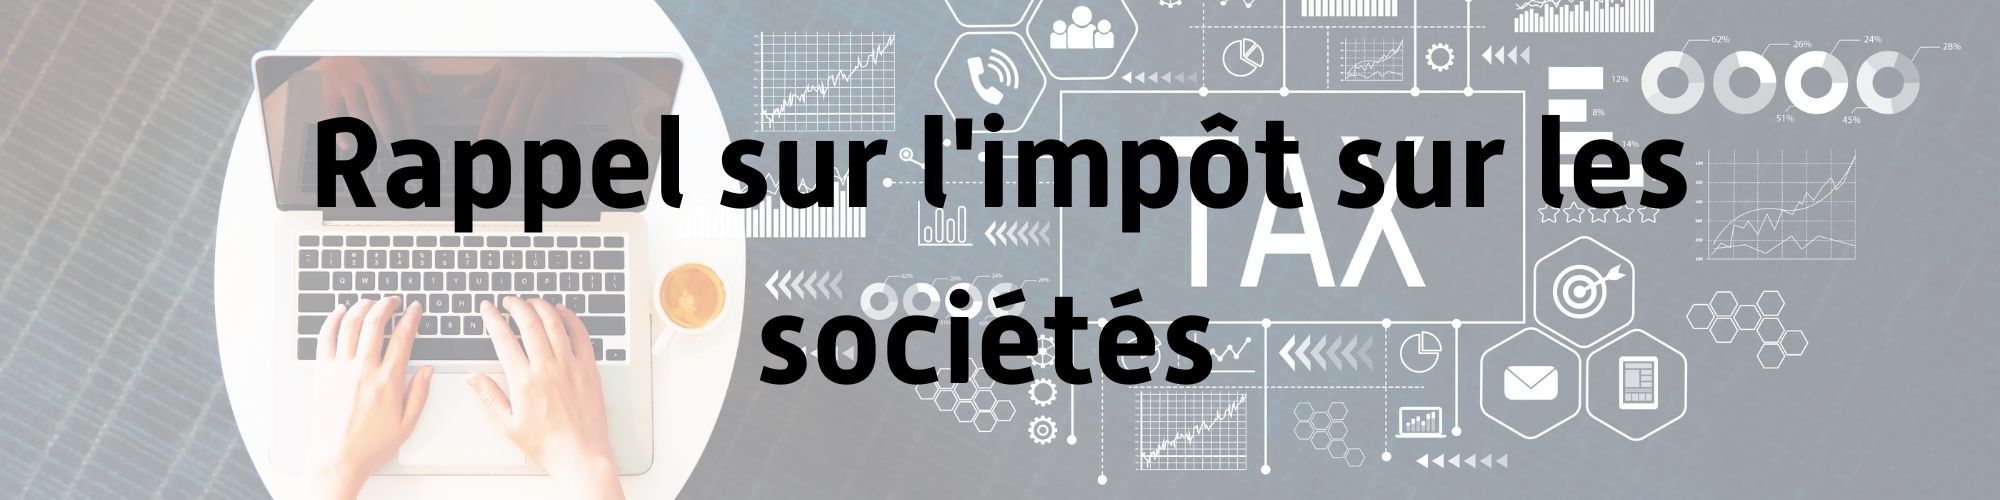 Impot_sur_societes_IS